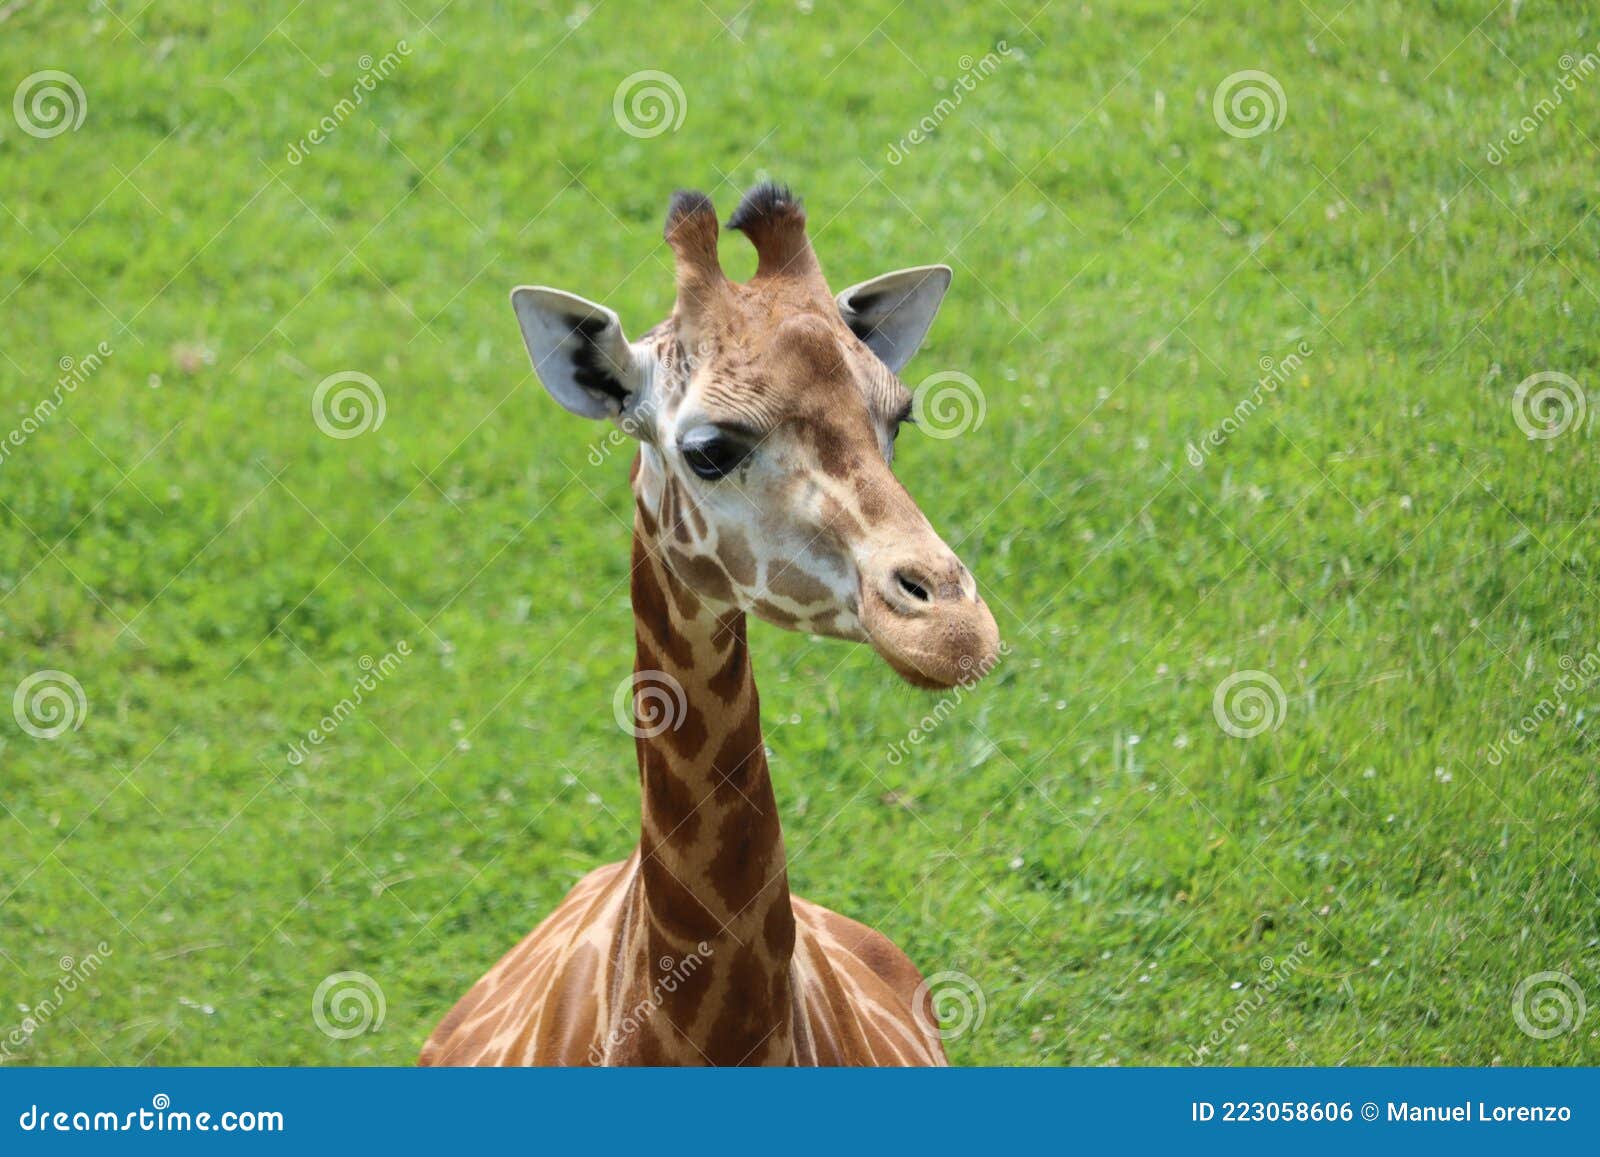 beautiful high giraffe spots wild long neck fast horns